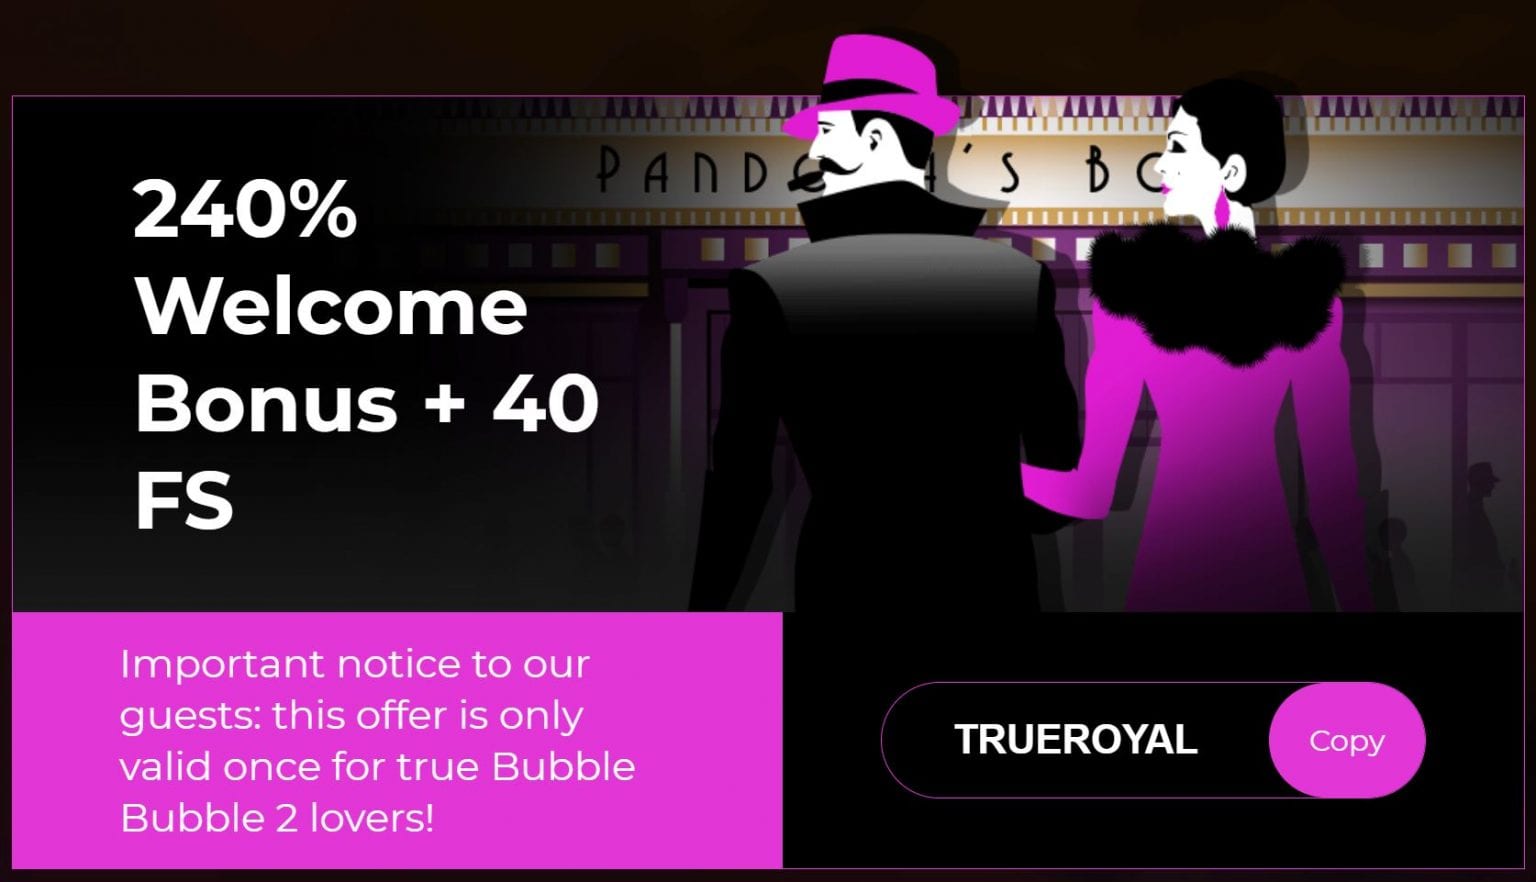 casino royale bonus codes